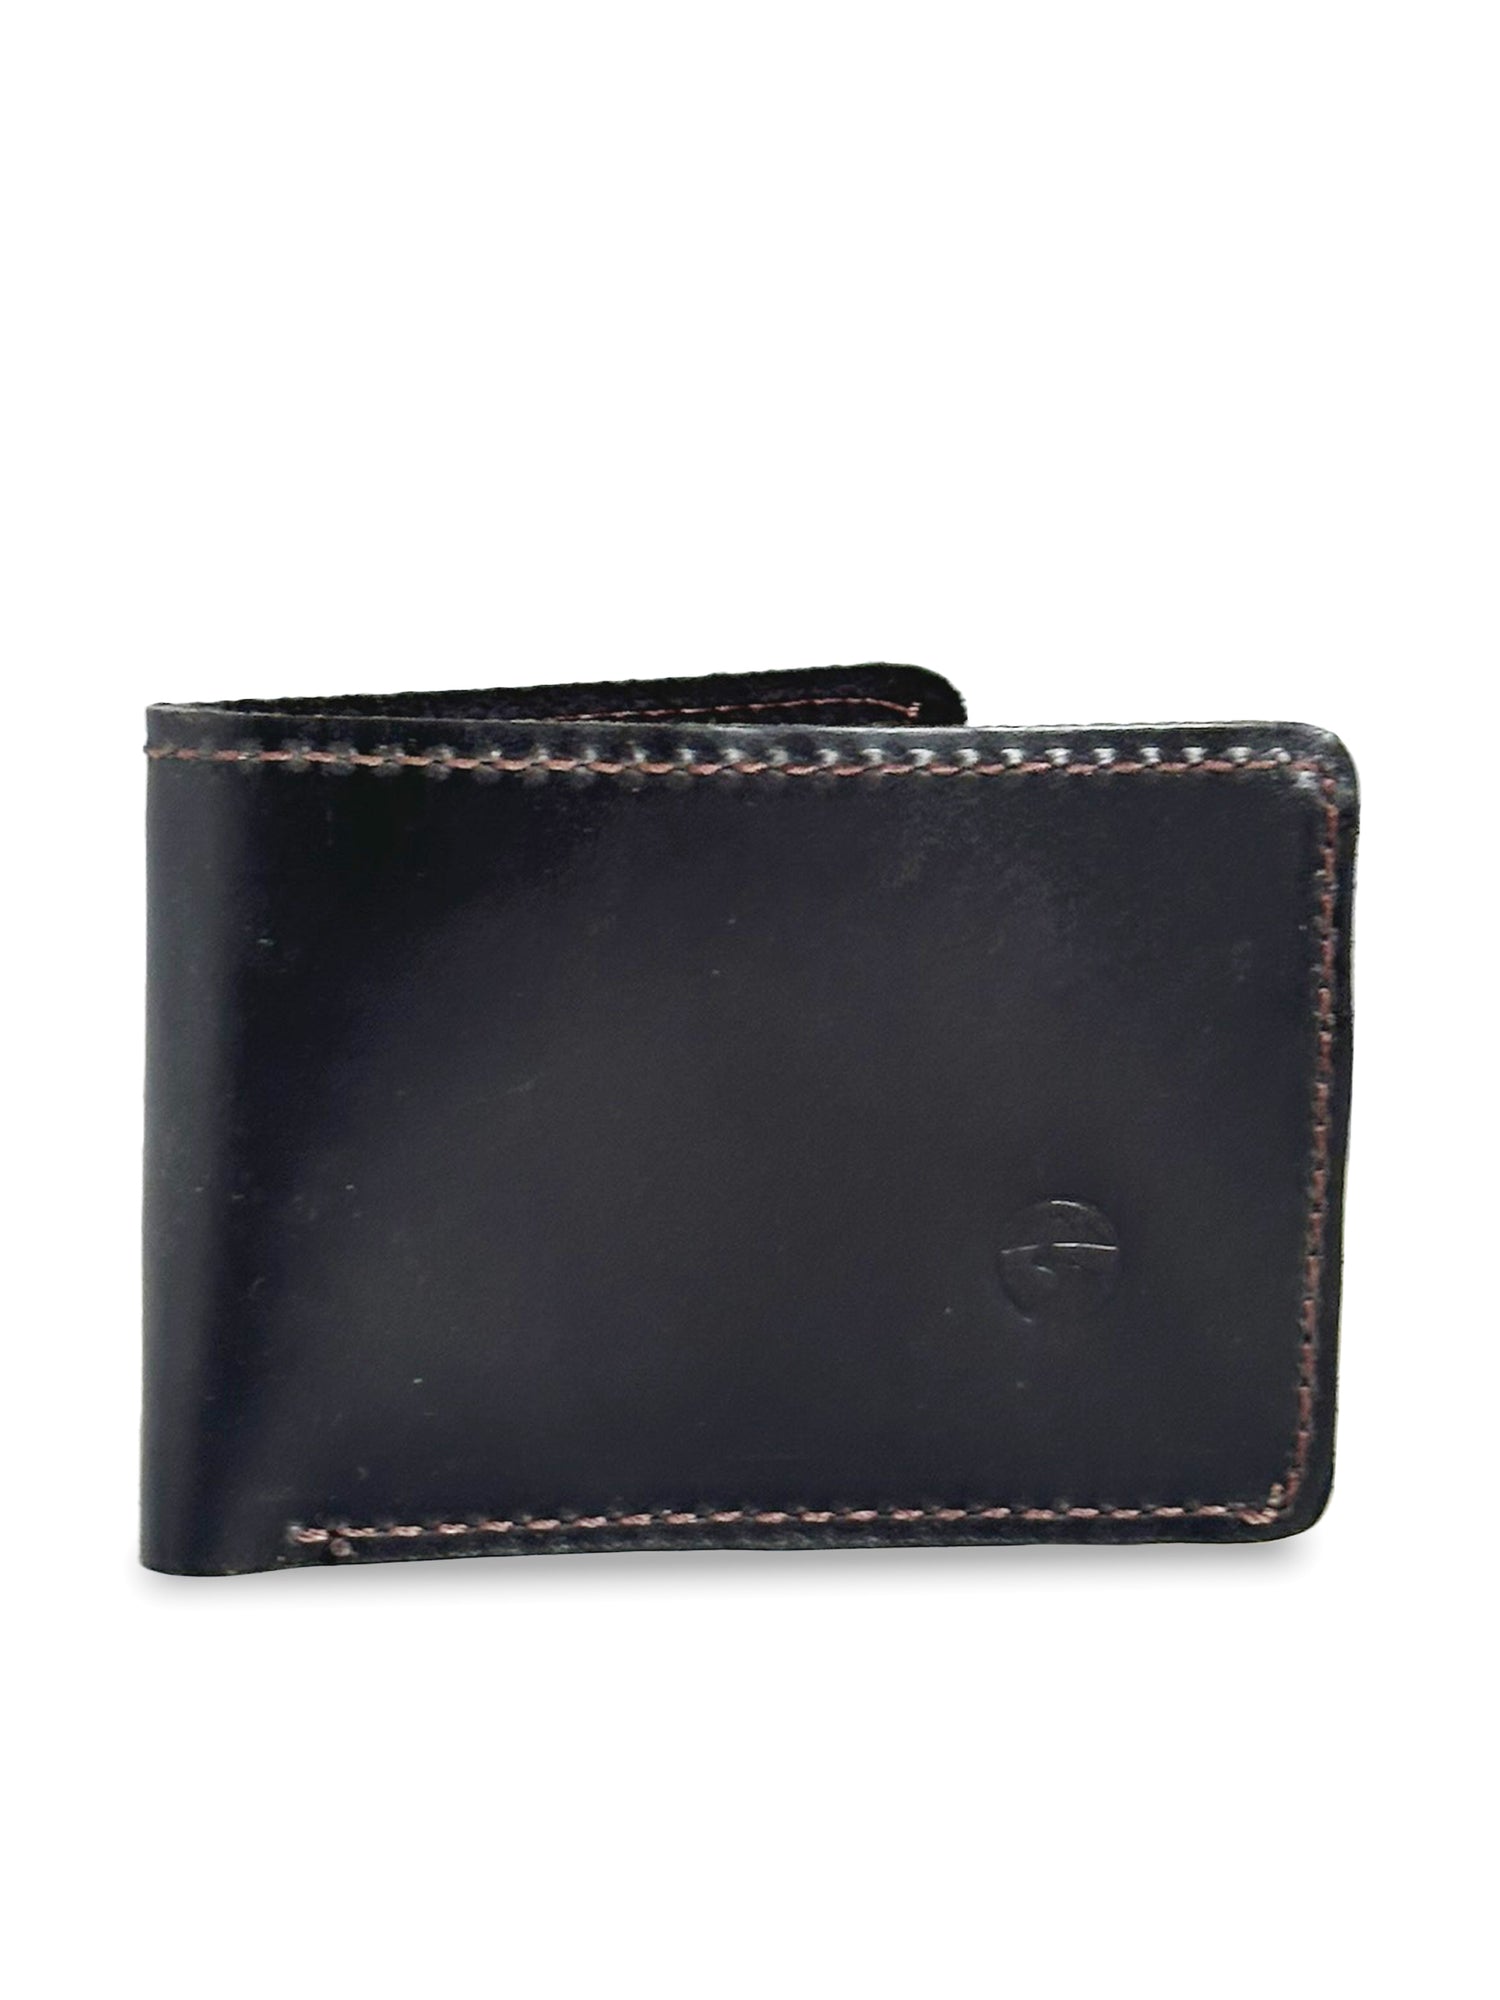 Classic Black Bi-fold Wallet